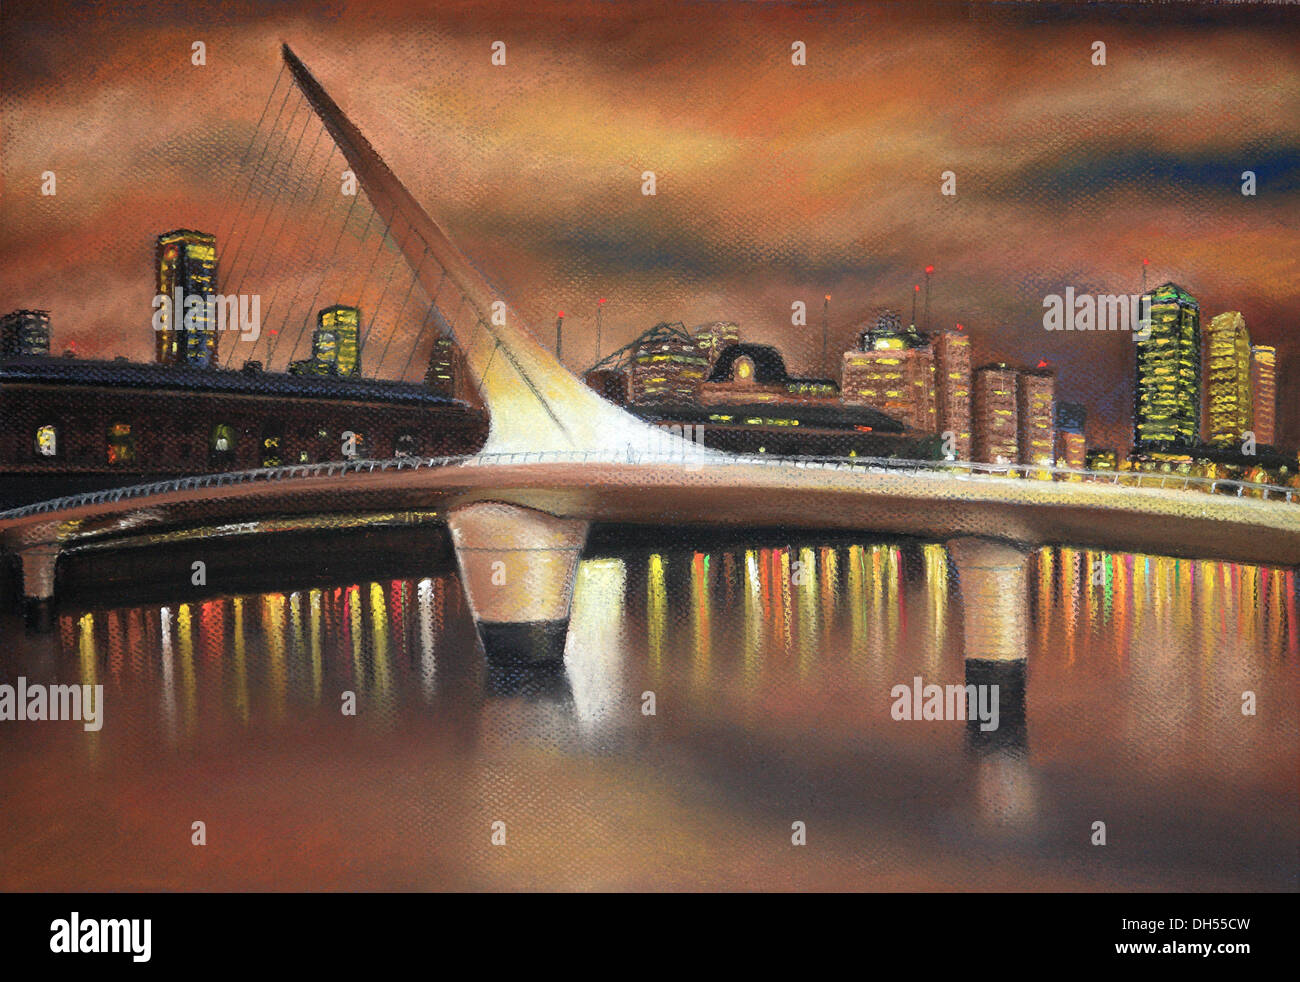 Pastel pintura de Bernardo galmarini: Puente de la mujer vista al atardecer naranja tormentoso, con la silueta de la ciudad en el fondo. Foto de stock